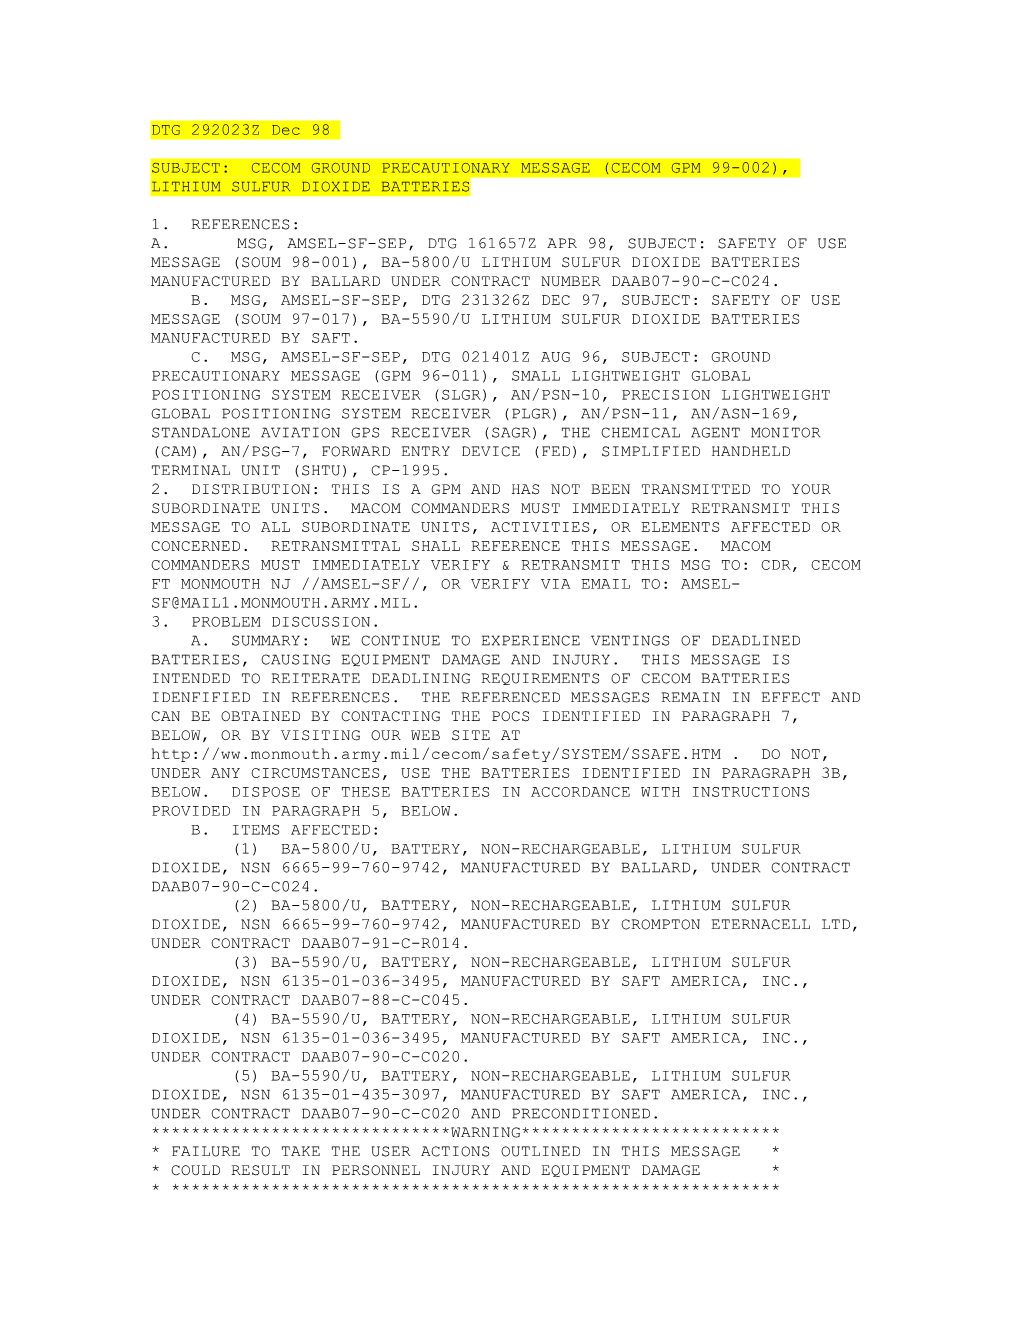 Subject: Cecom Ground Precautionary Message (Cecom Gpm 99-002), Lithium Sulfur Dioxide